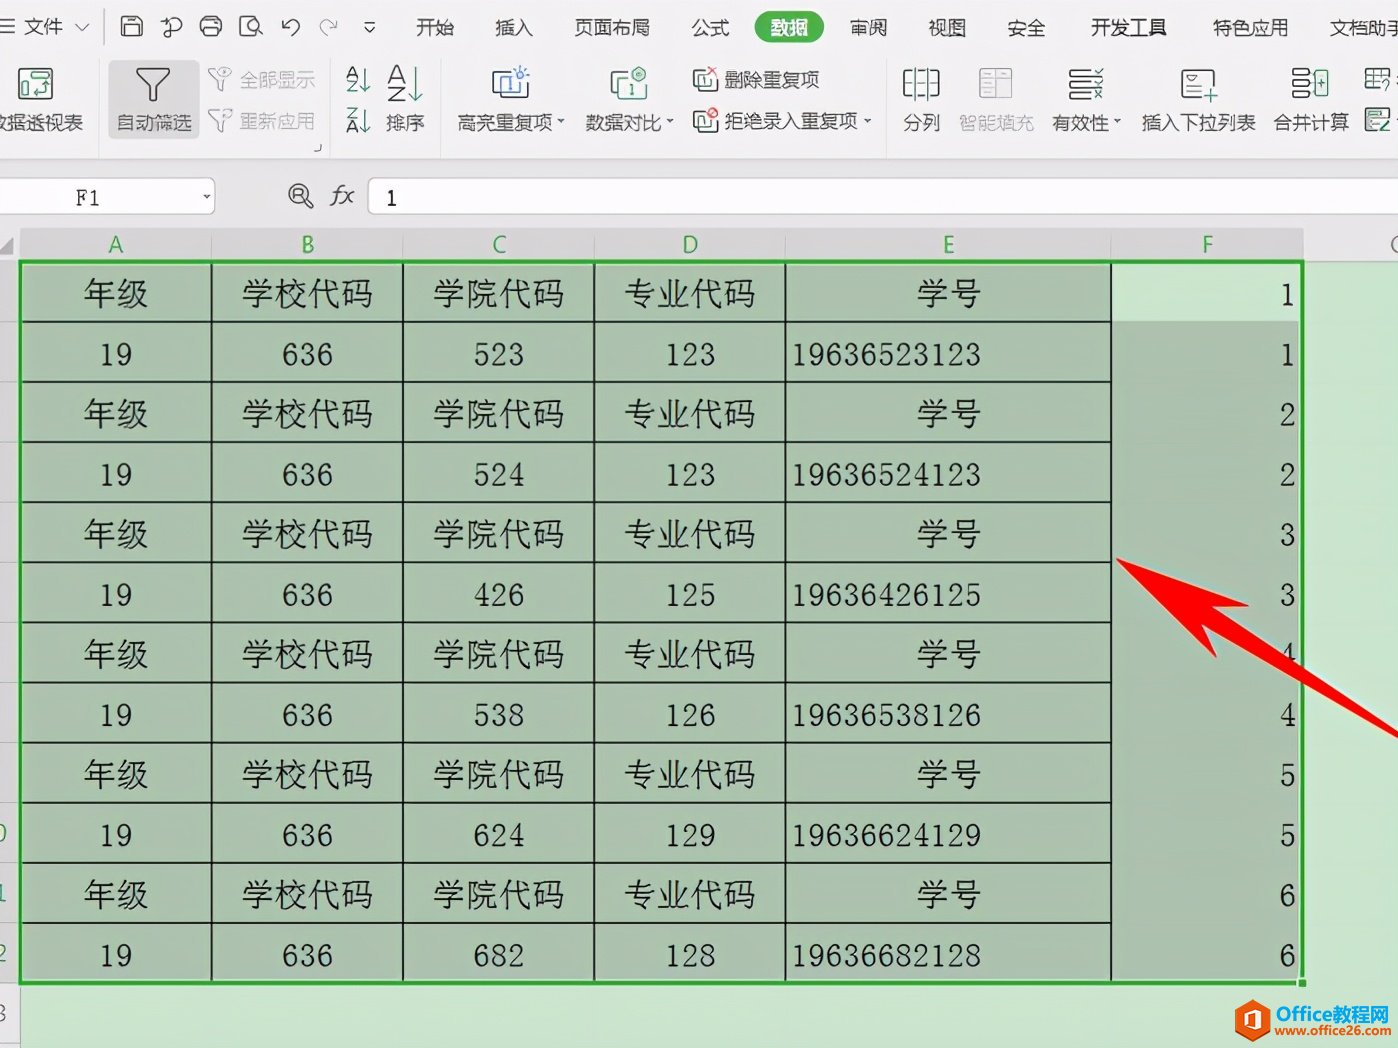 Excel表格技巧—如何制作多表头表格